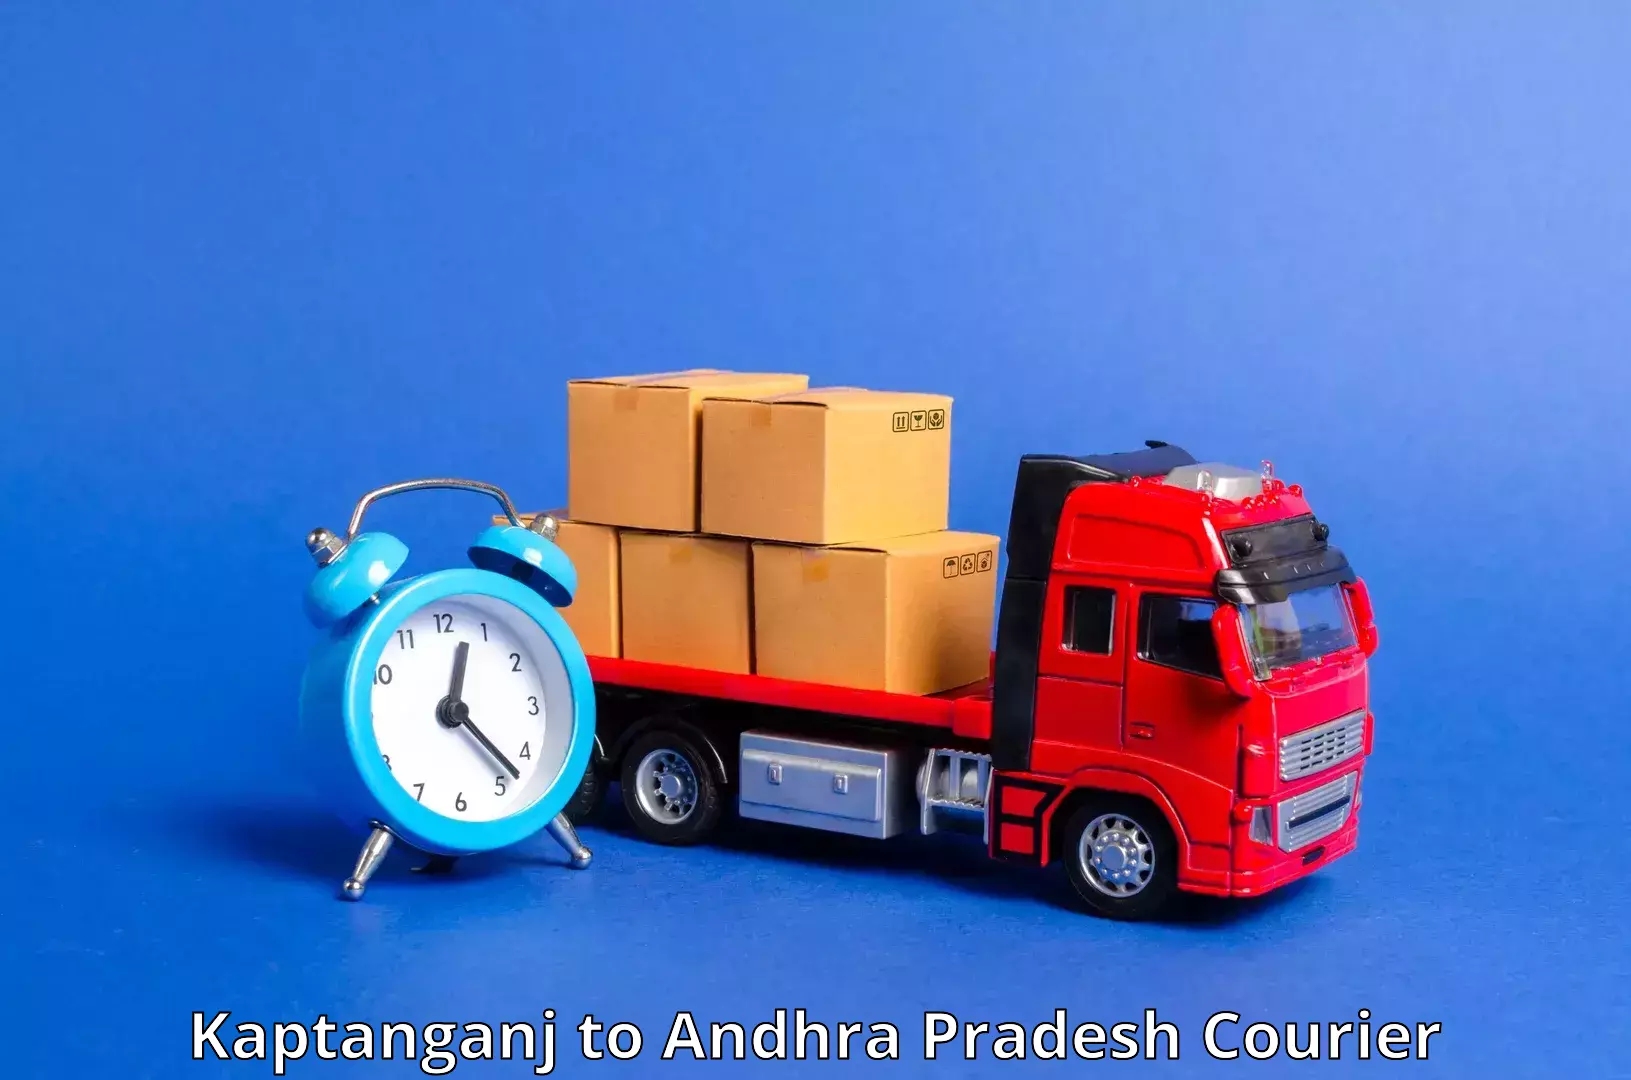 Package tracking Kaptanganj to Kalyandurg